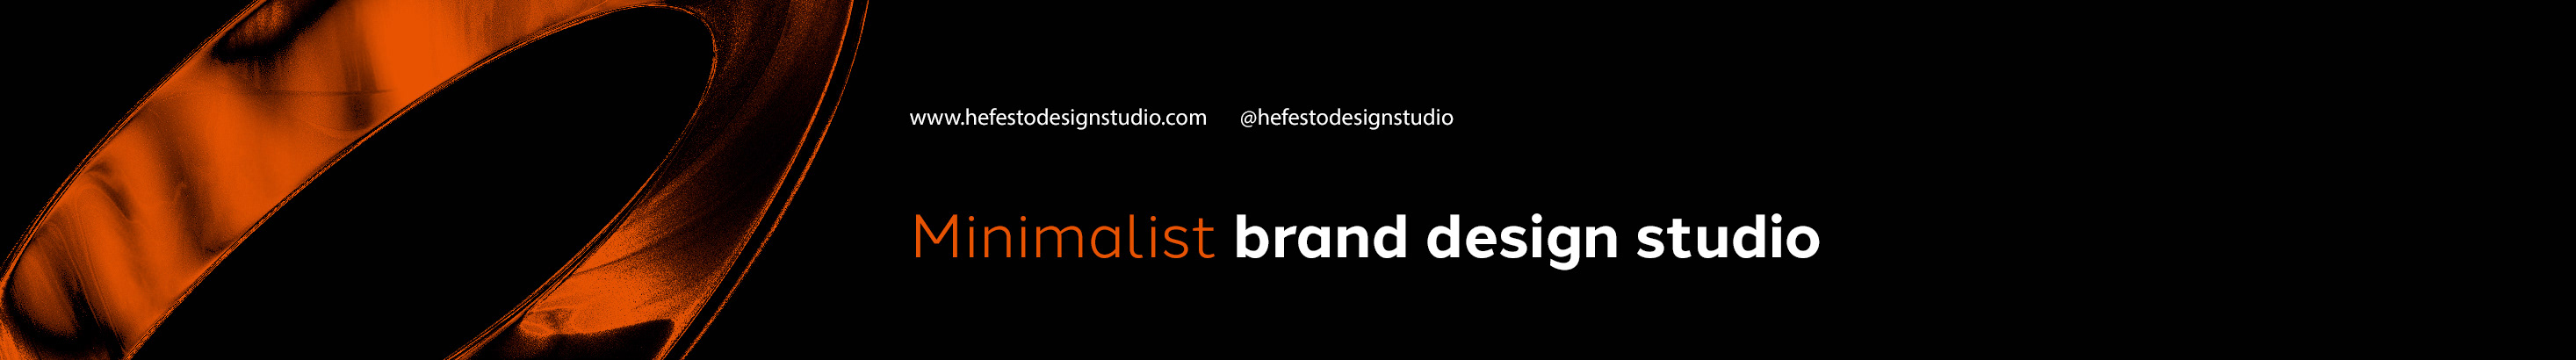 Profielbanner van Hefesto Design Studio